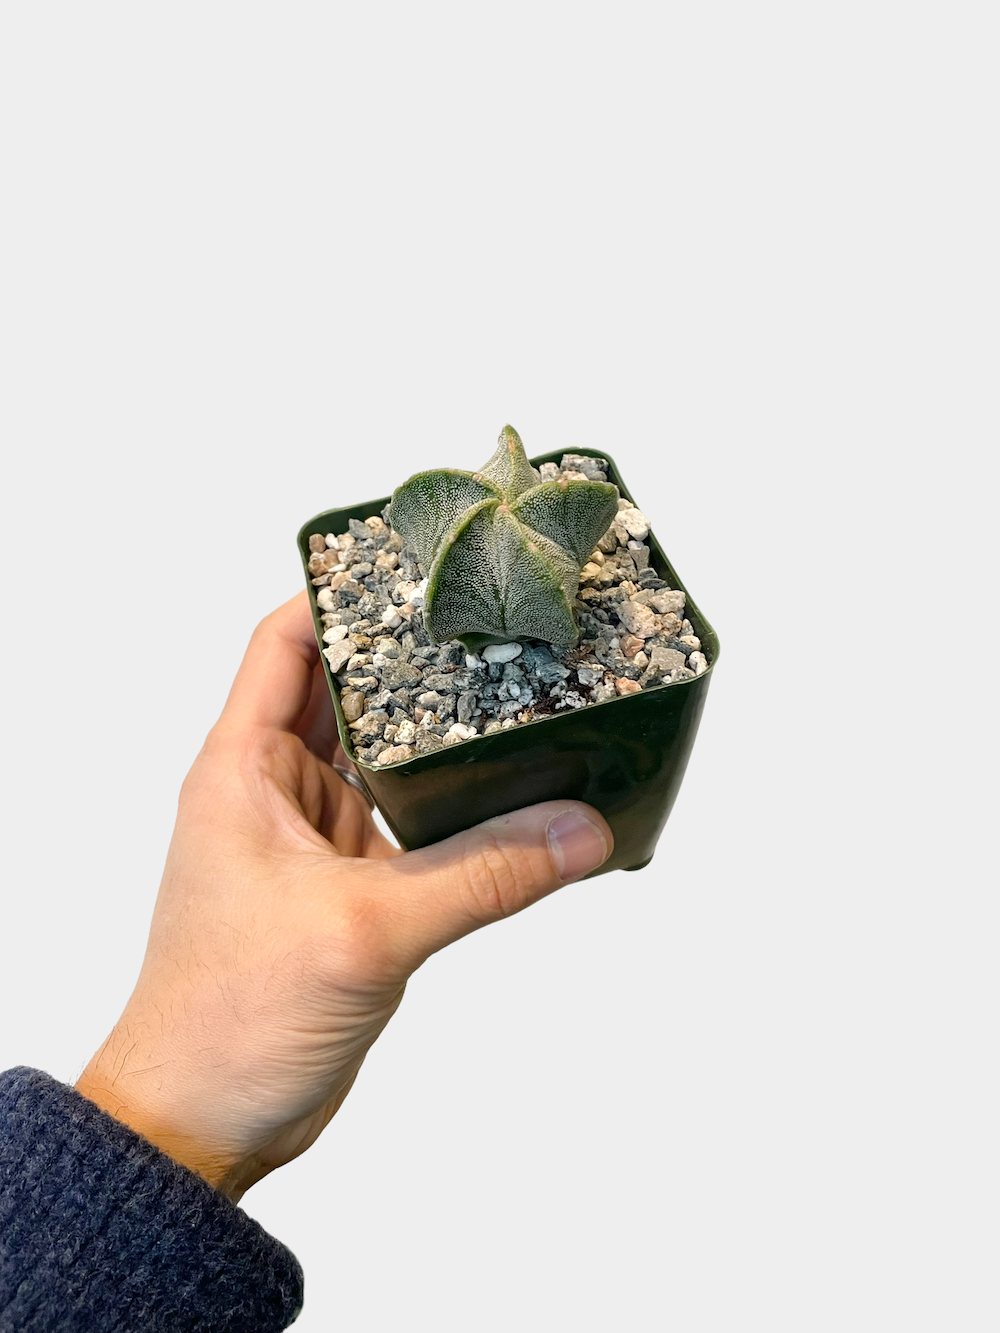 Cactus Astrophytum Myriostigma aka Bishop's Cap Cactus - 4" Pot